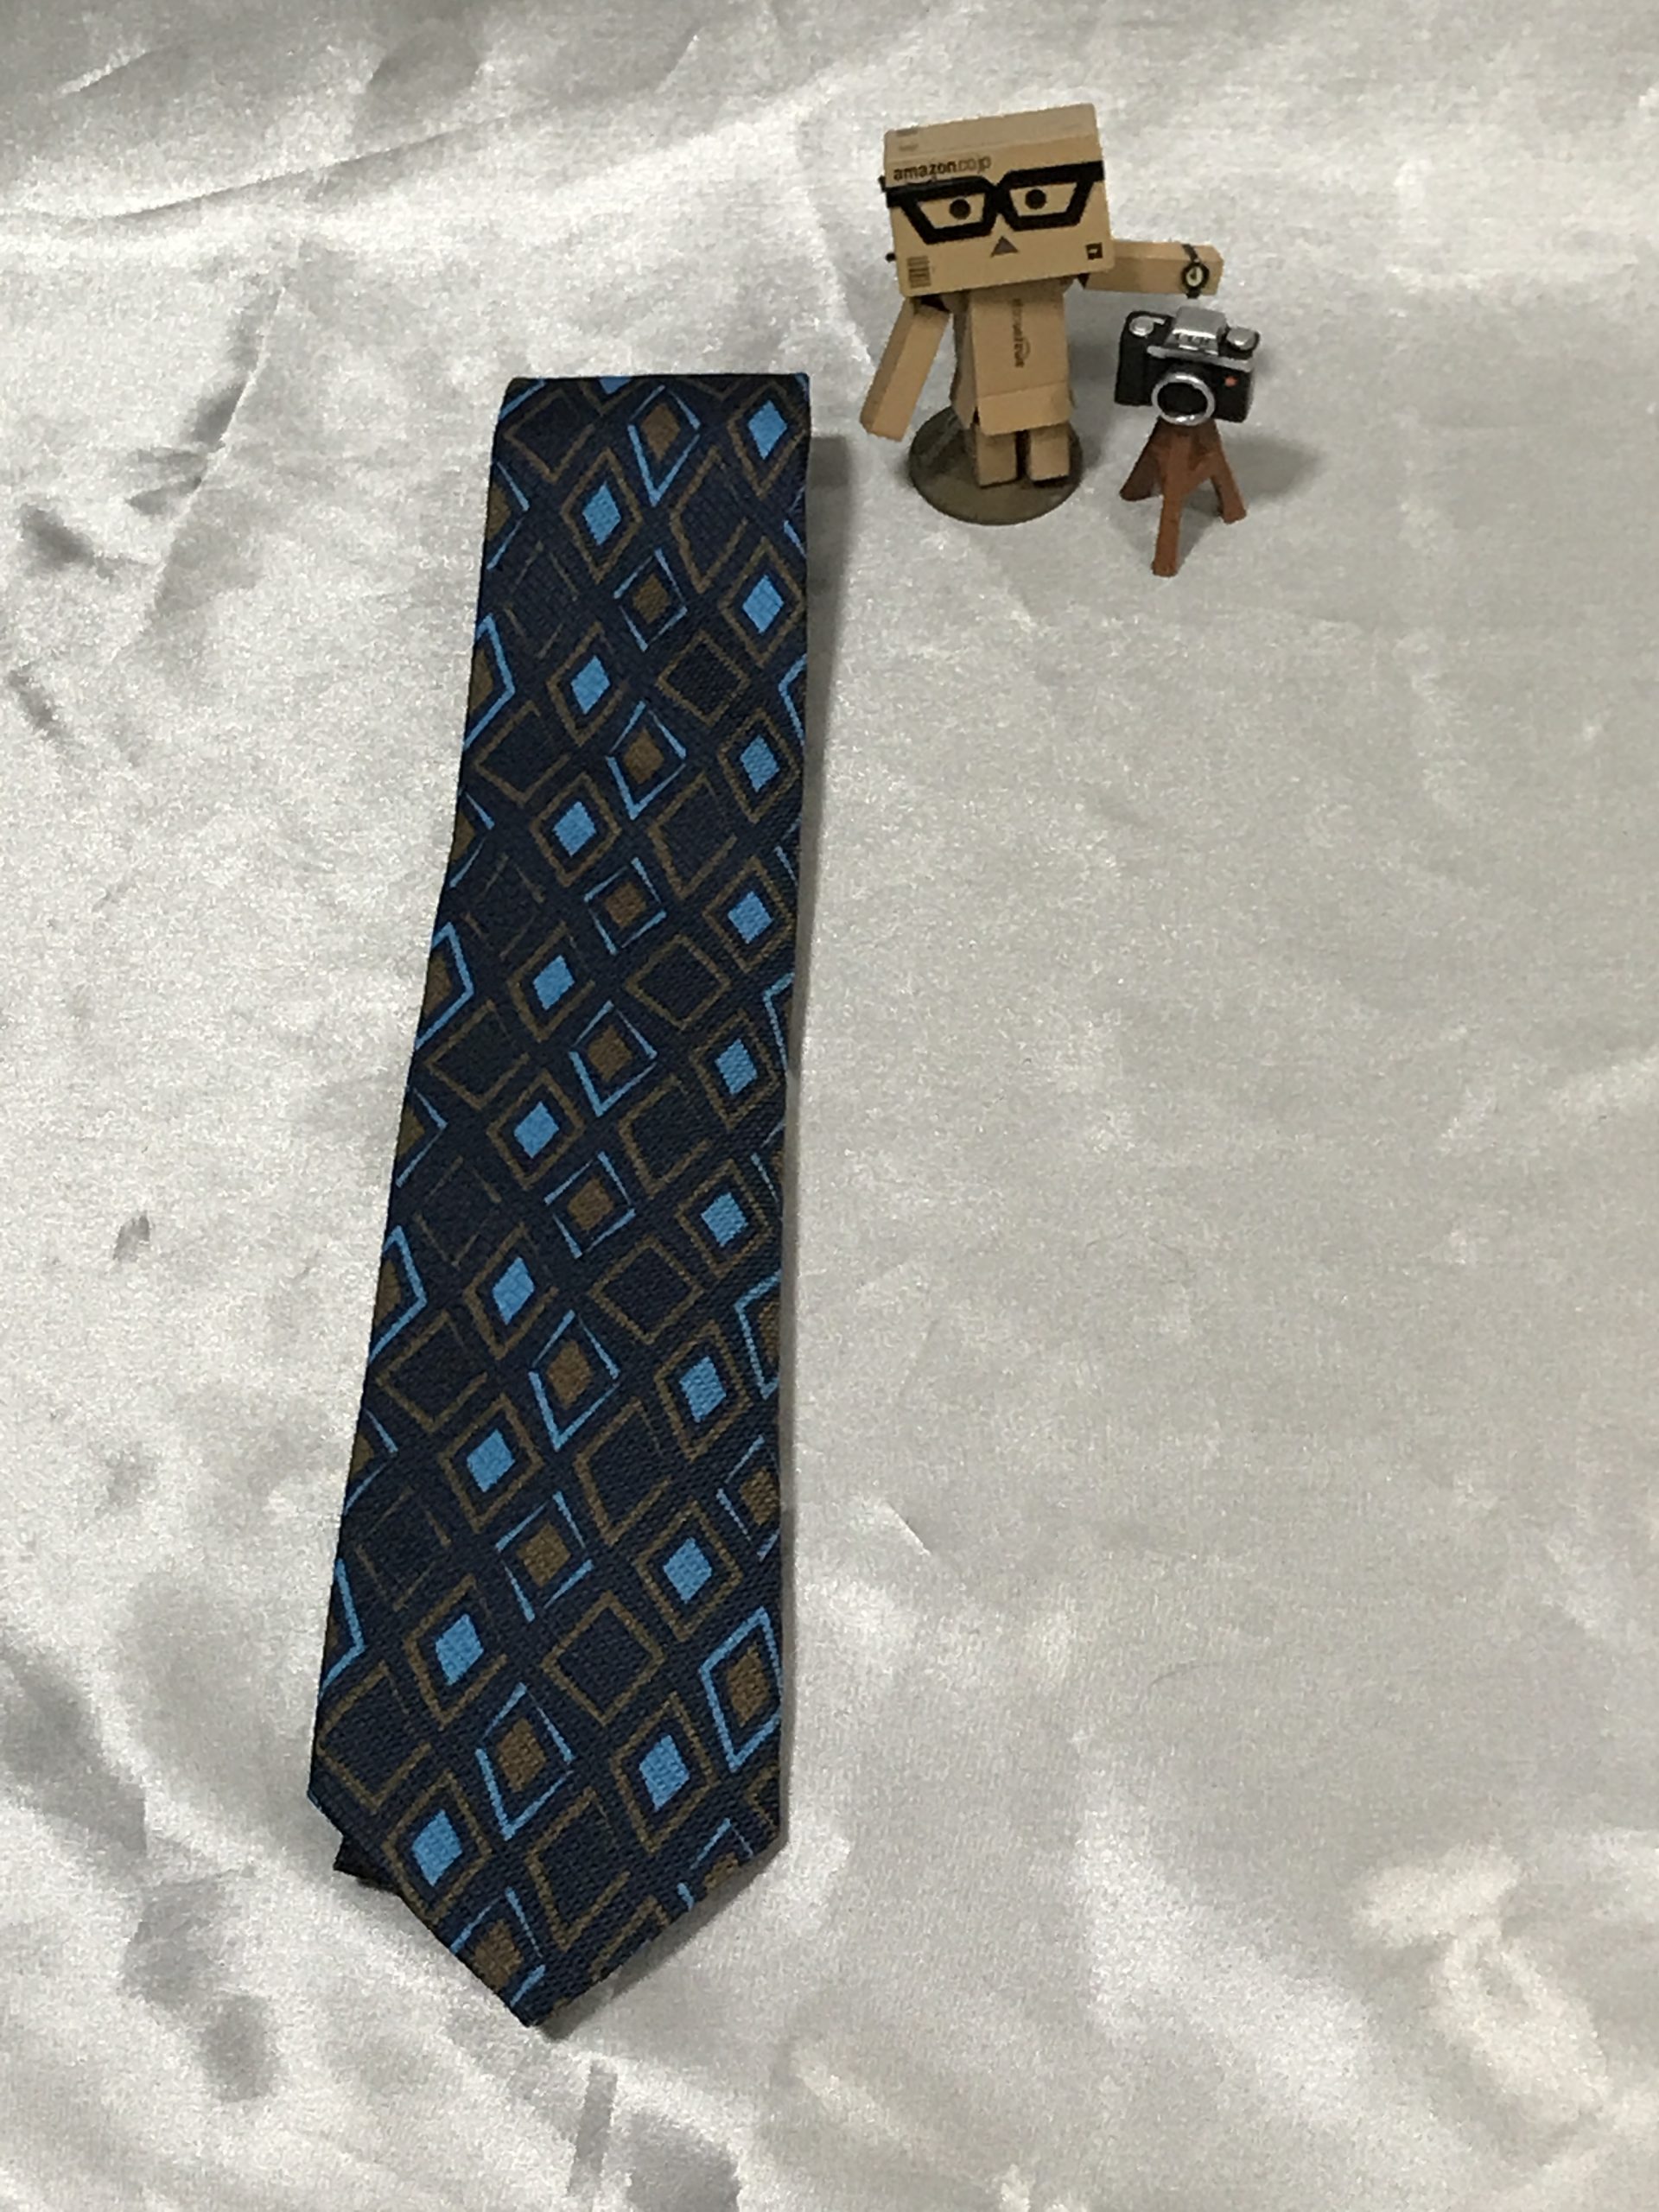 Michael J. Drake のネクタイを買いました